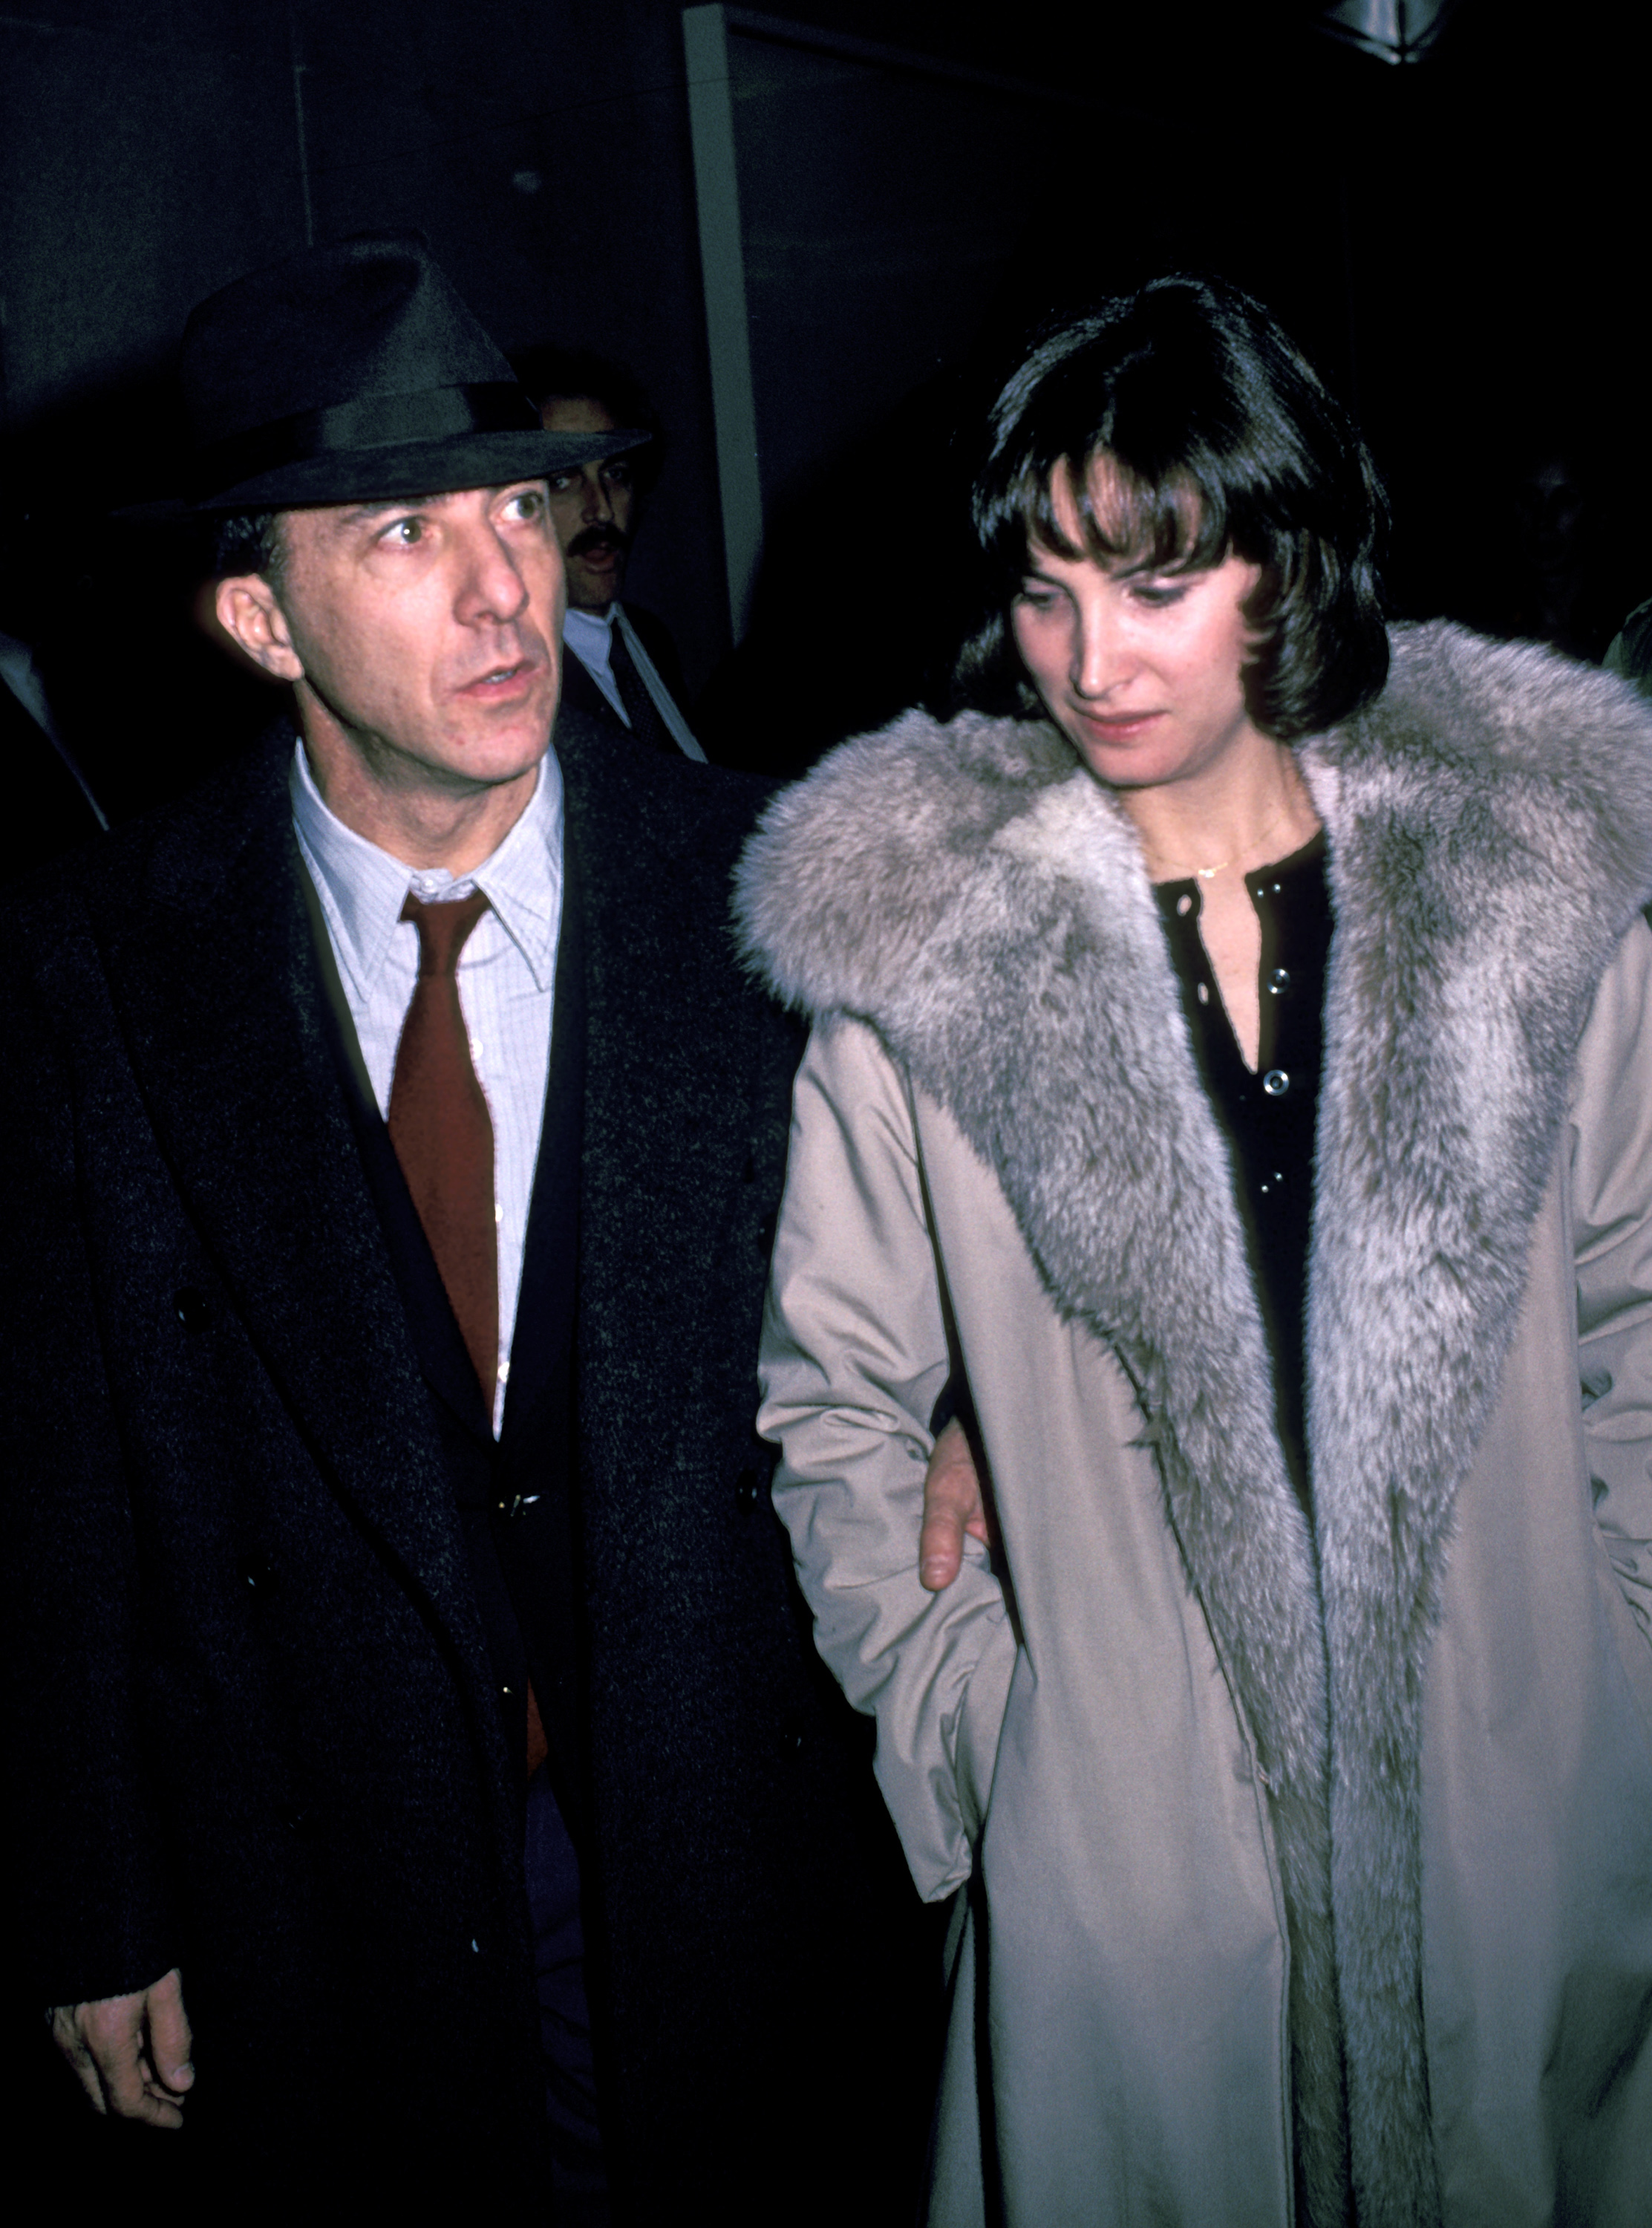 Der Schauspieler und die Frau während der Vorführung von "Der Falke und der Schneemann" in New York City am 28. Januar 1985. | Quelle: Getty Images